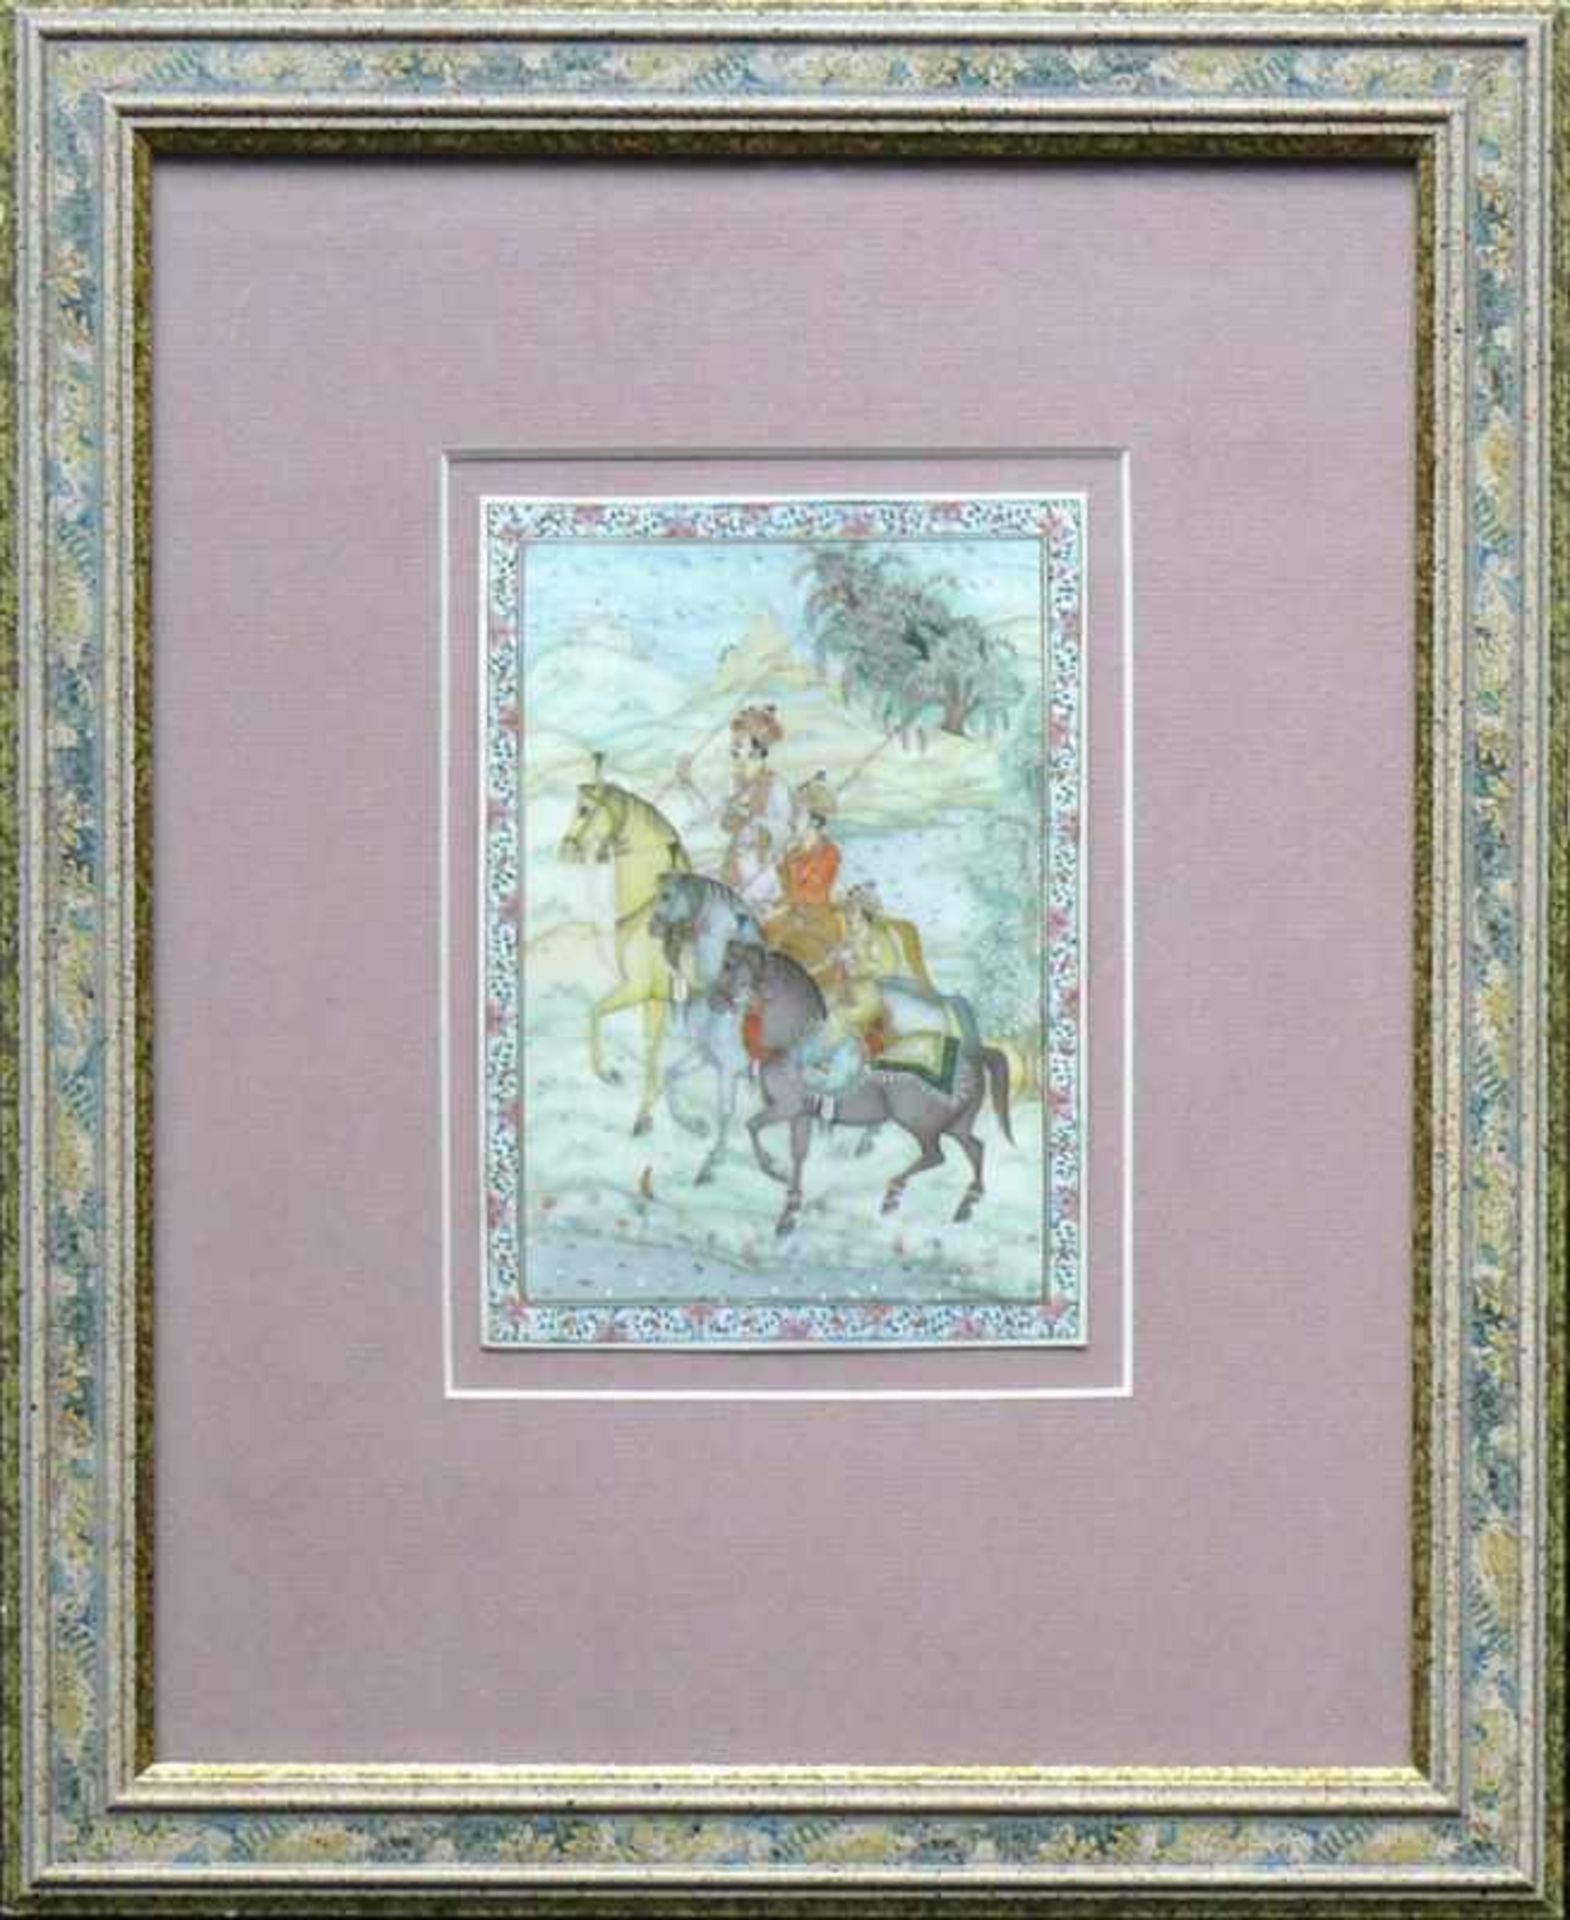 Miniatur-Bild (Persien) "3 Reiter in Landschaft"; Mischtechnik/Elfenbein; ca. 15 x 11 cm; unter Glas - Bild 2 aus 3